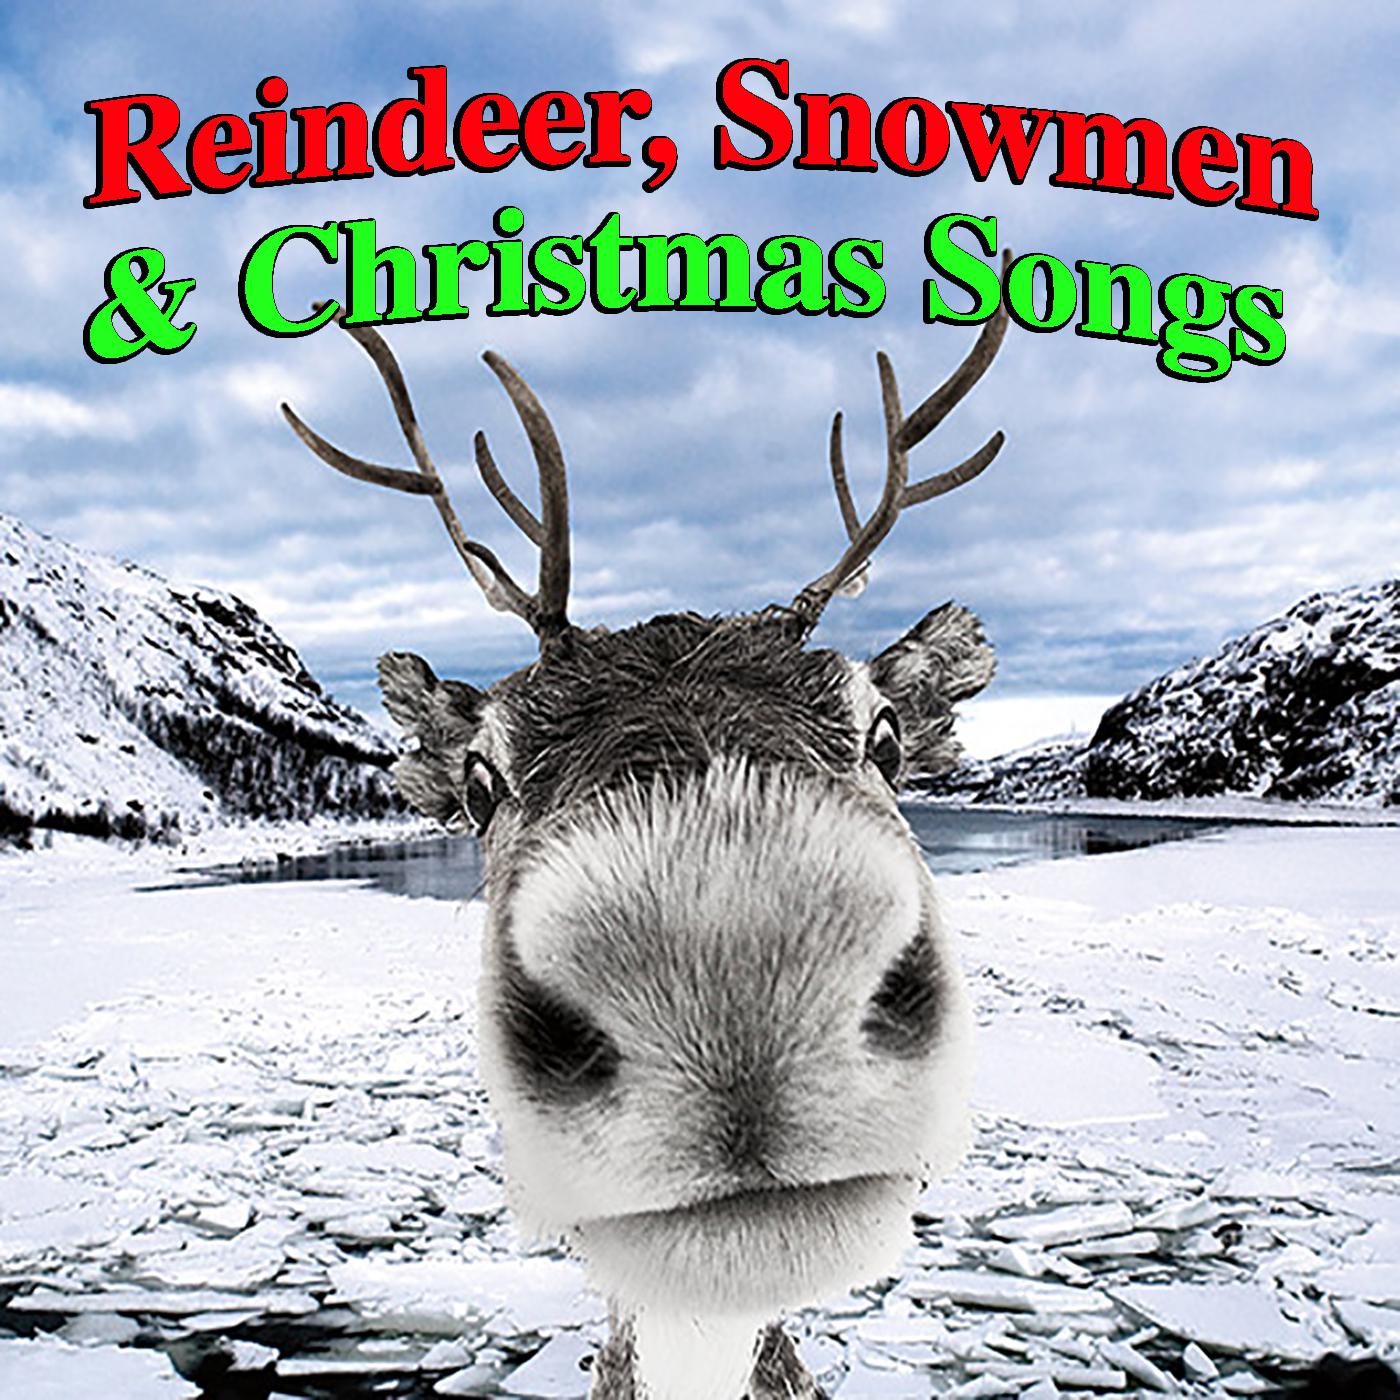 Reindeer, Snowmen & Christmas Songs